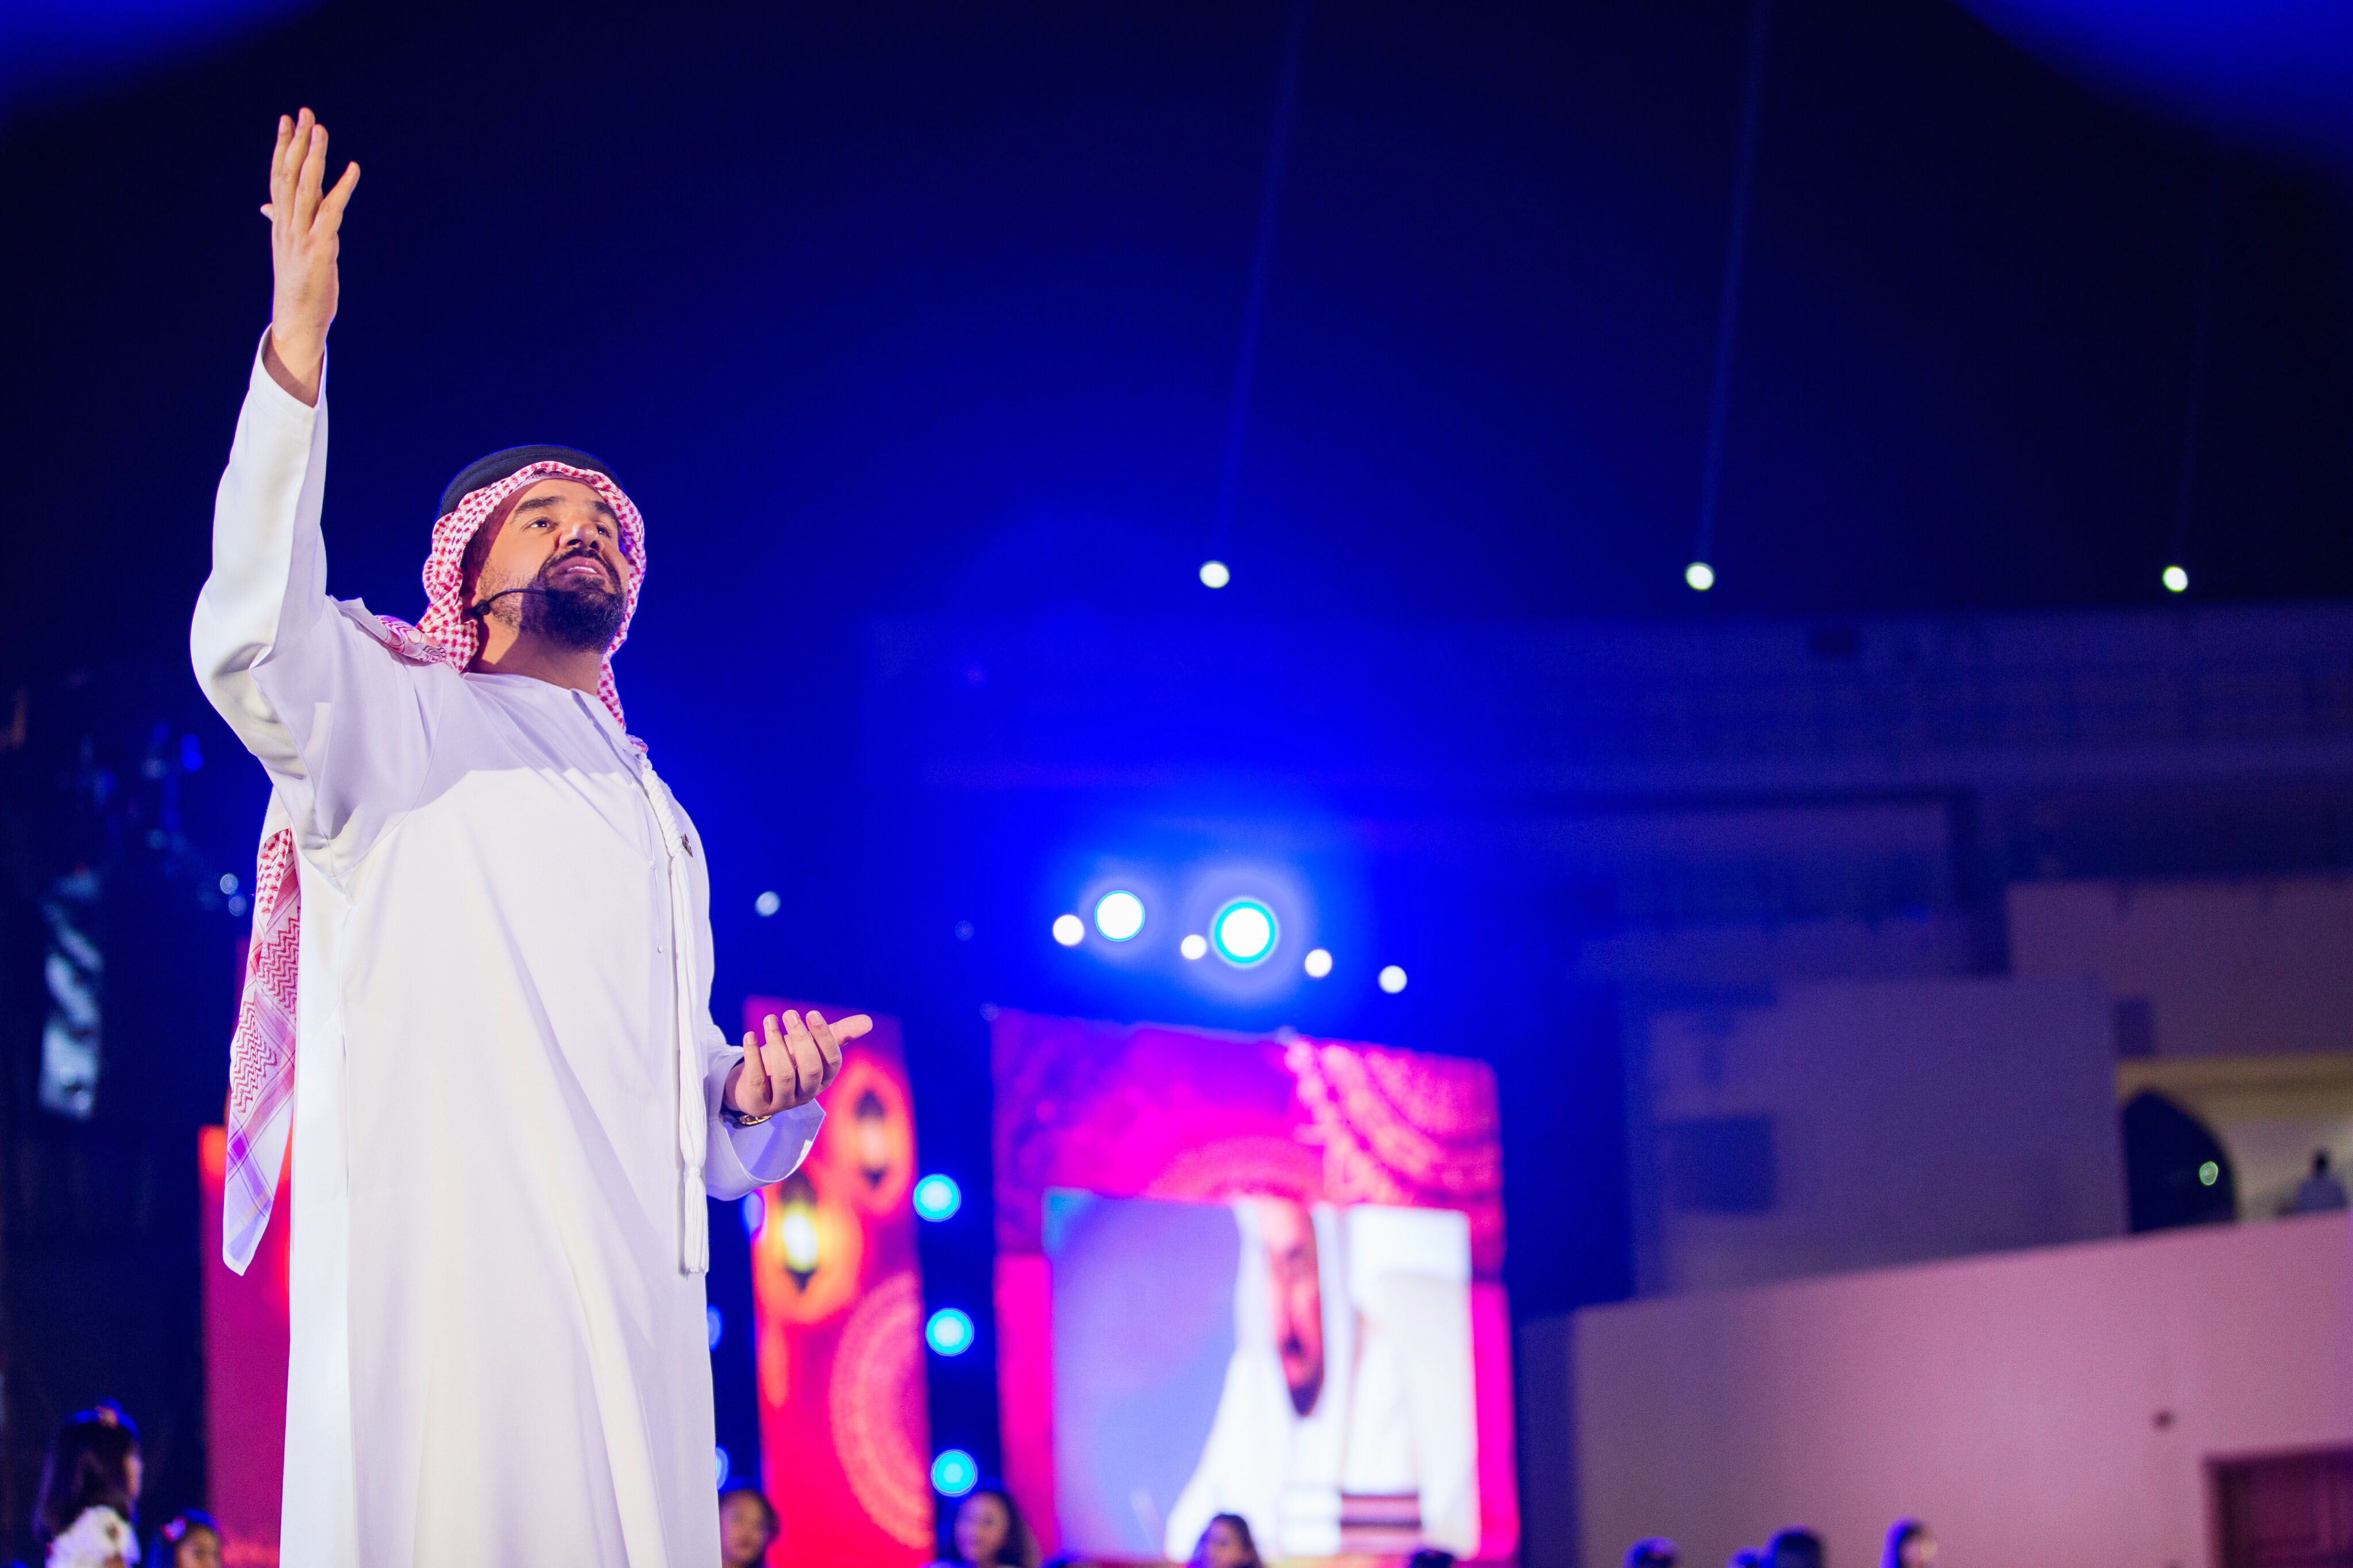 صورة أطلق كليب “أهل العزم” إحتفالاً باليوم الوطني الـ46 حسين الجسمي يعزف ألحان الحب و الولاء للوطن والقادة بين أرجاء الإمارات